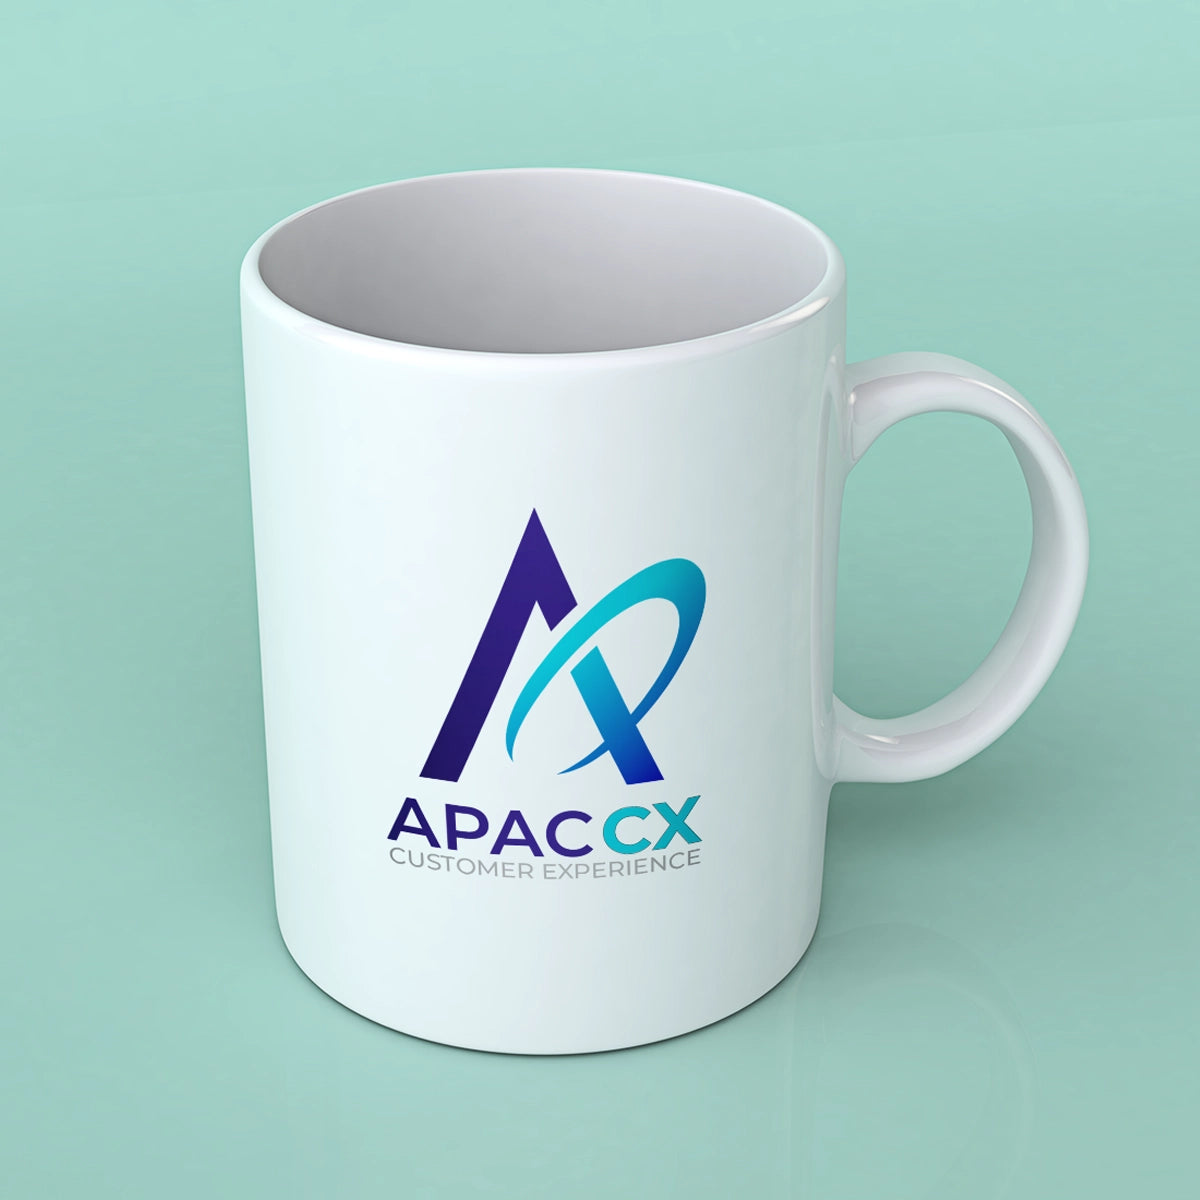 apaccx.com